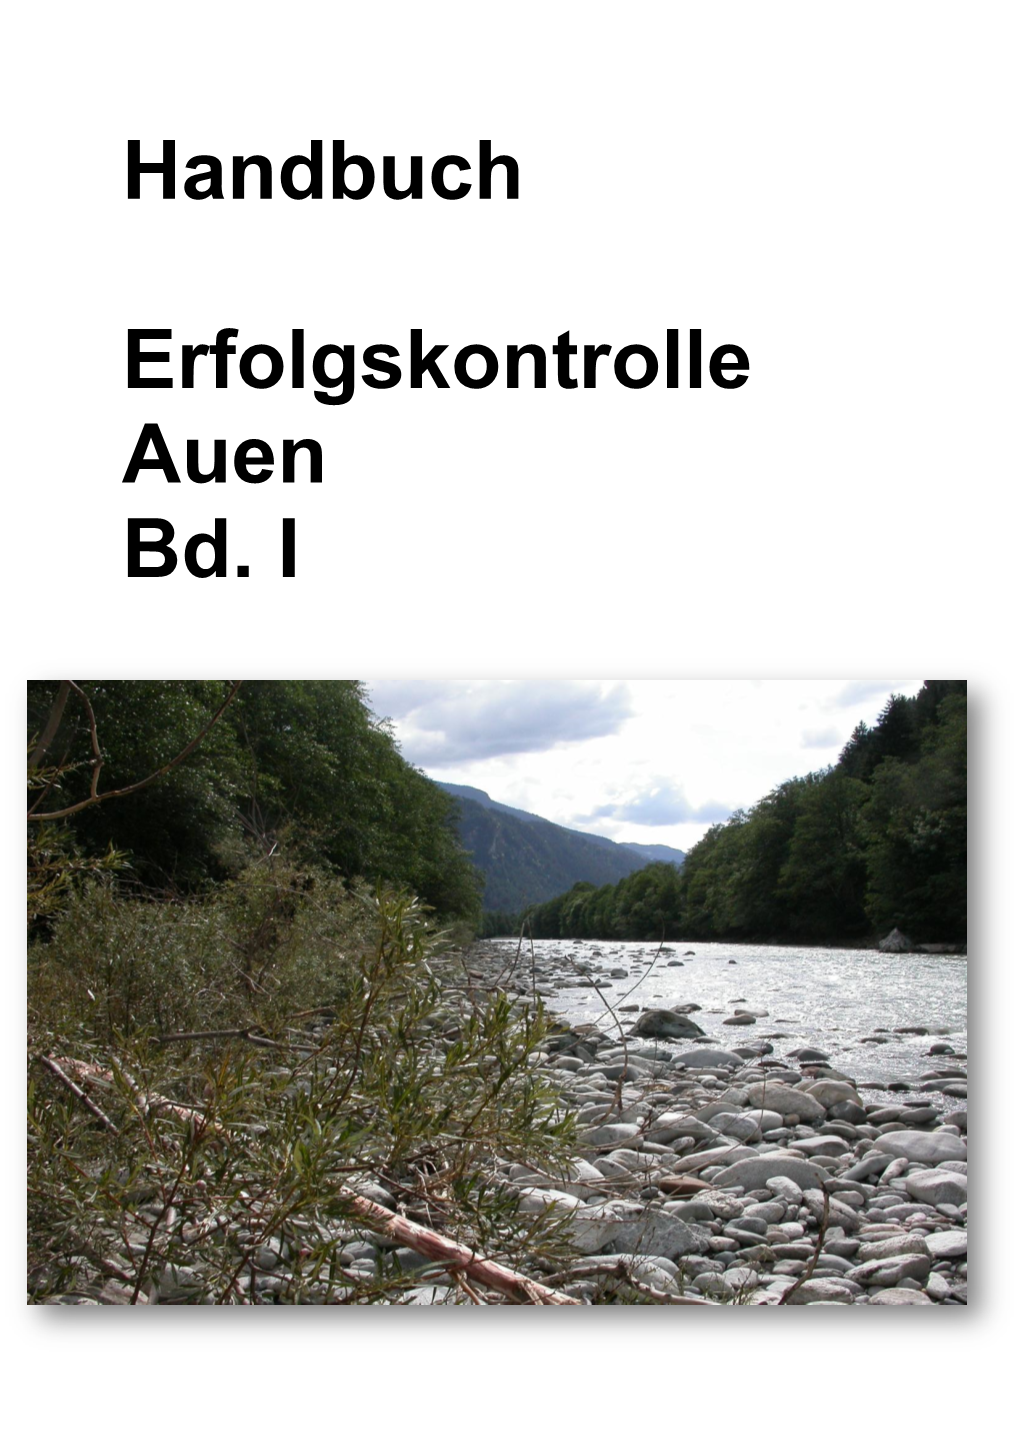 Handbuch Erfolgskontrolle Auen Bd. I